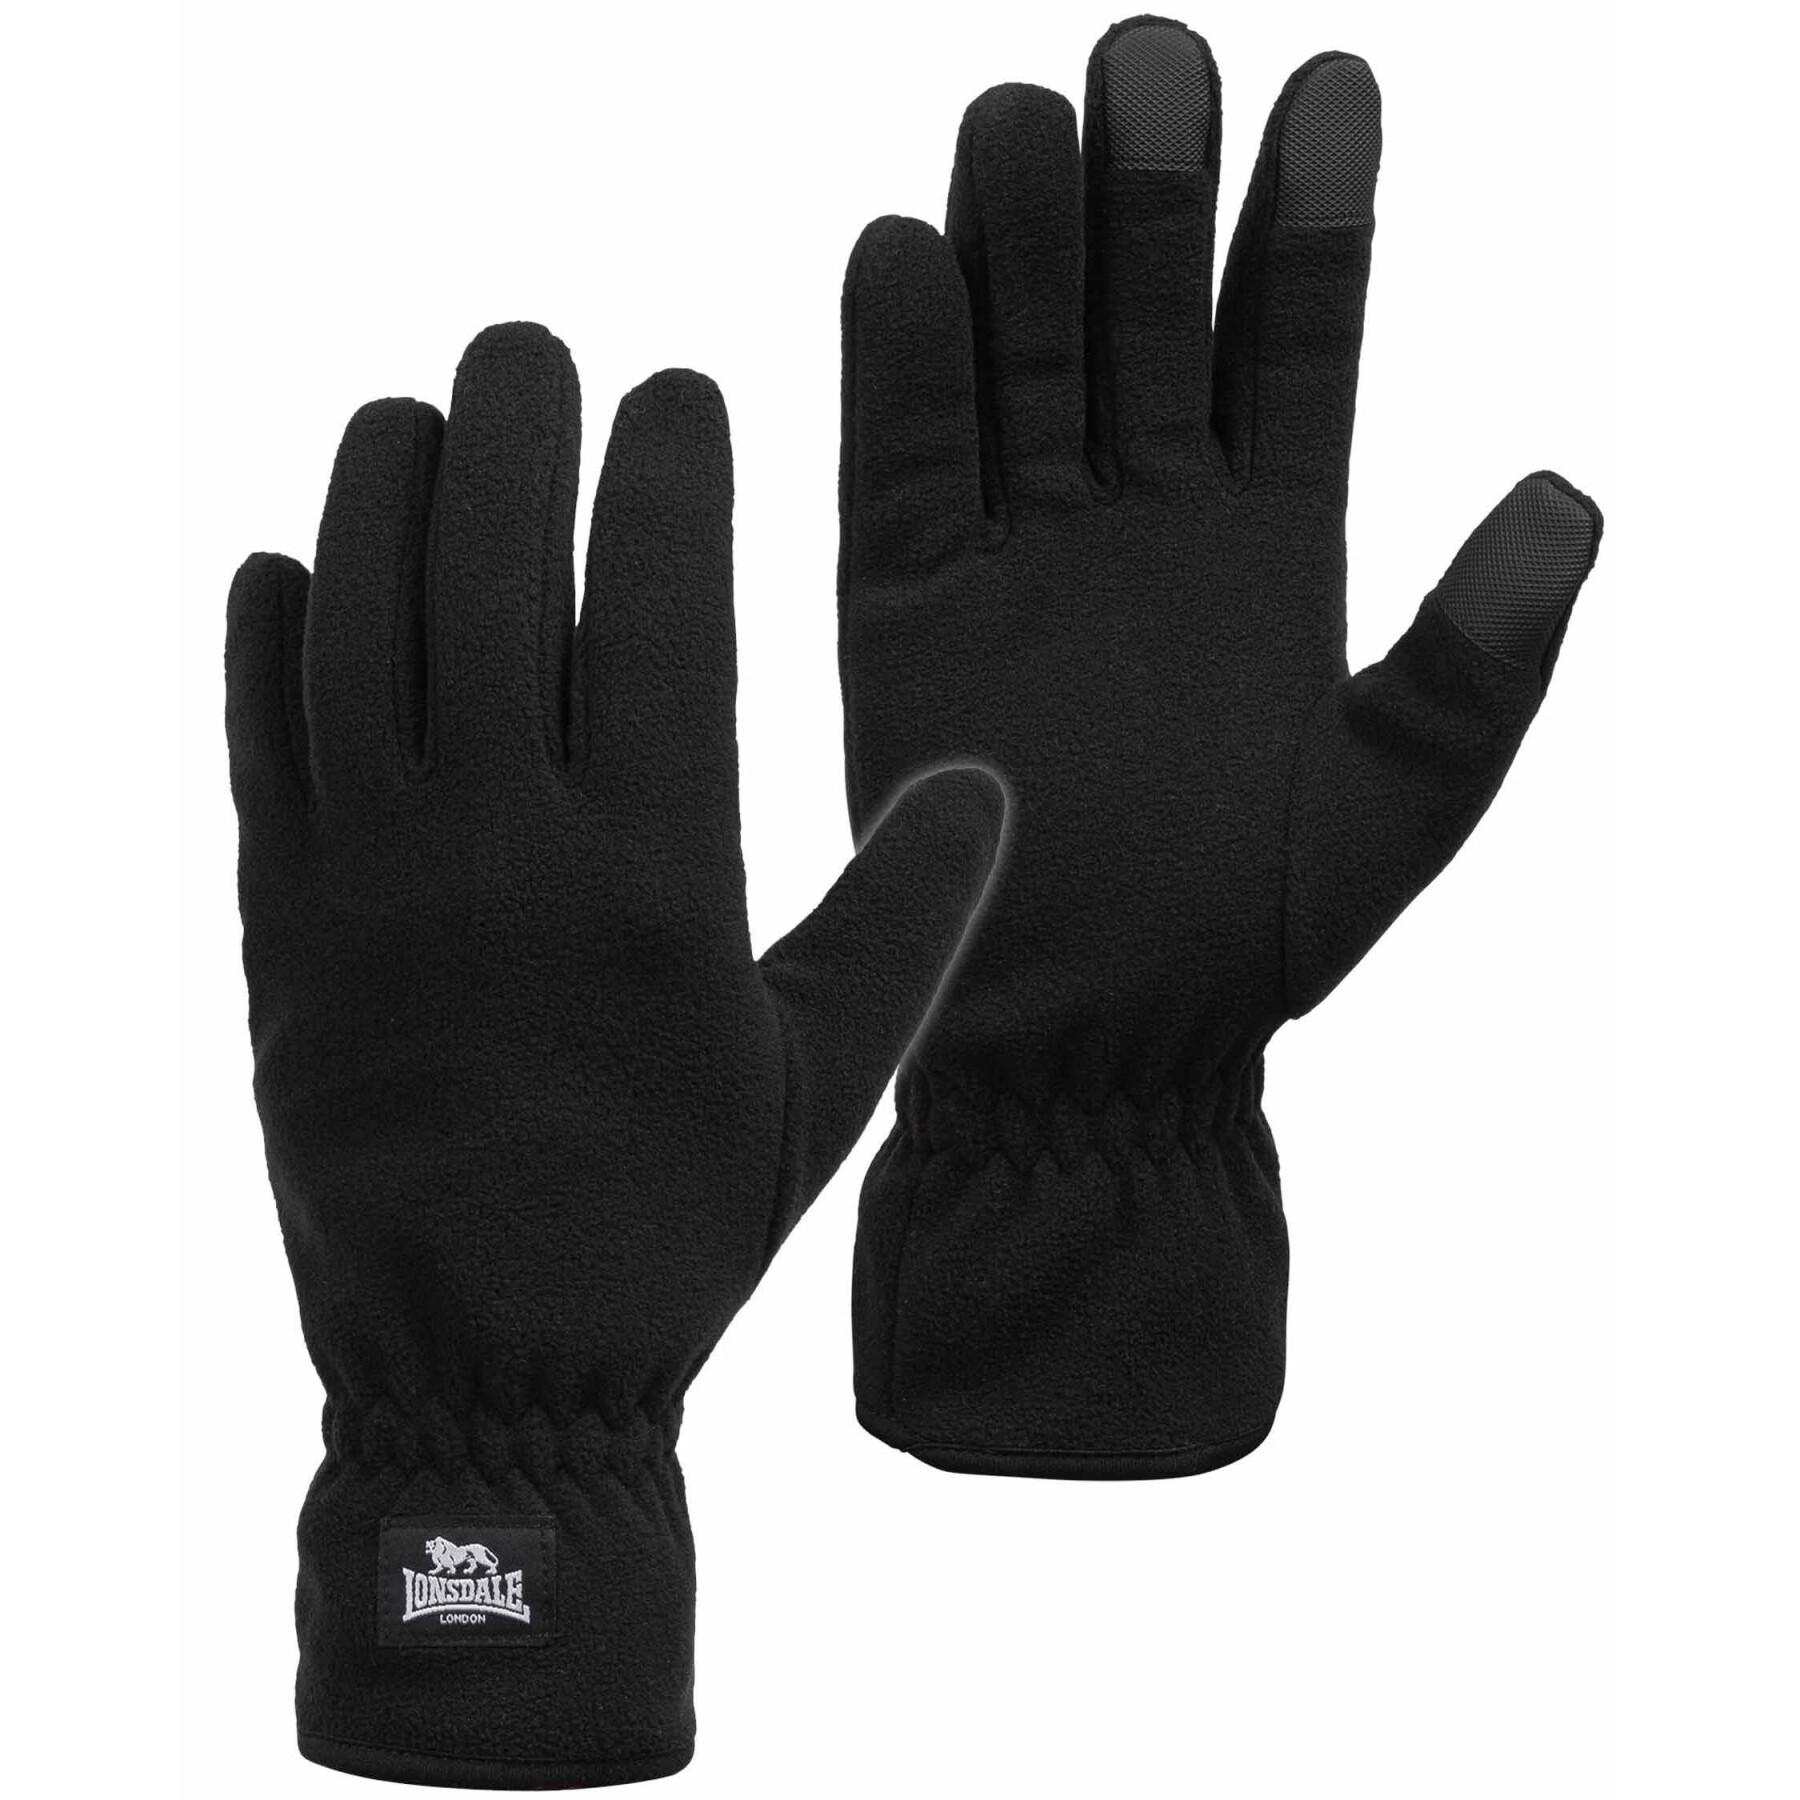 Handschuhe Lonsdale Ayside - Mode-Accessoires Schals & - Handschuhe - Accessoires